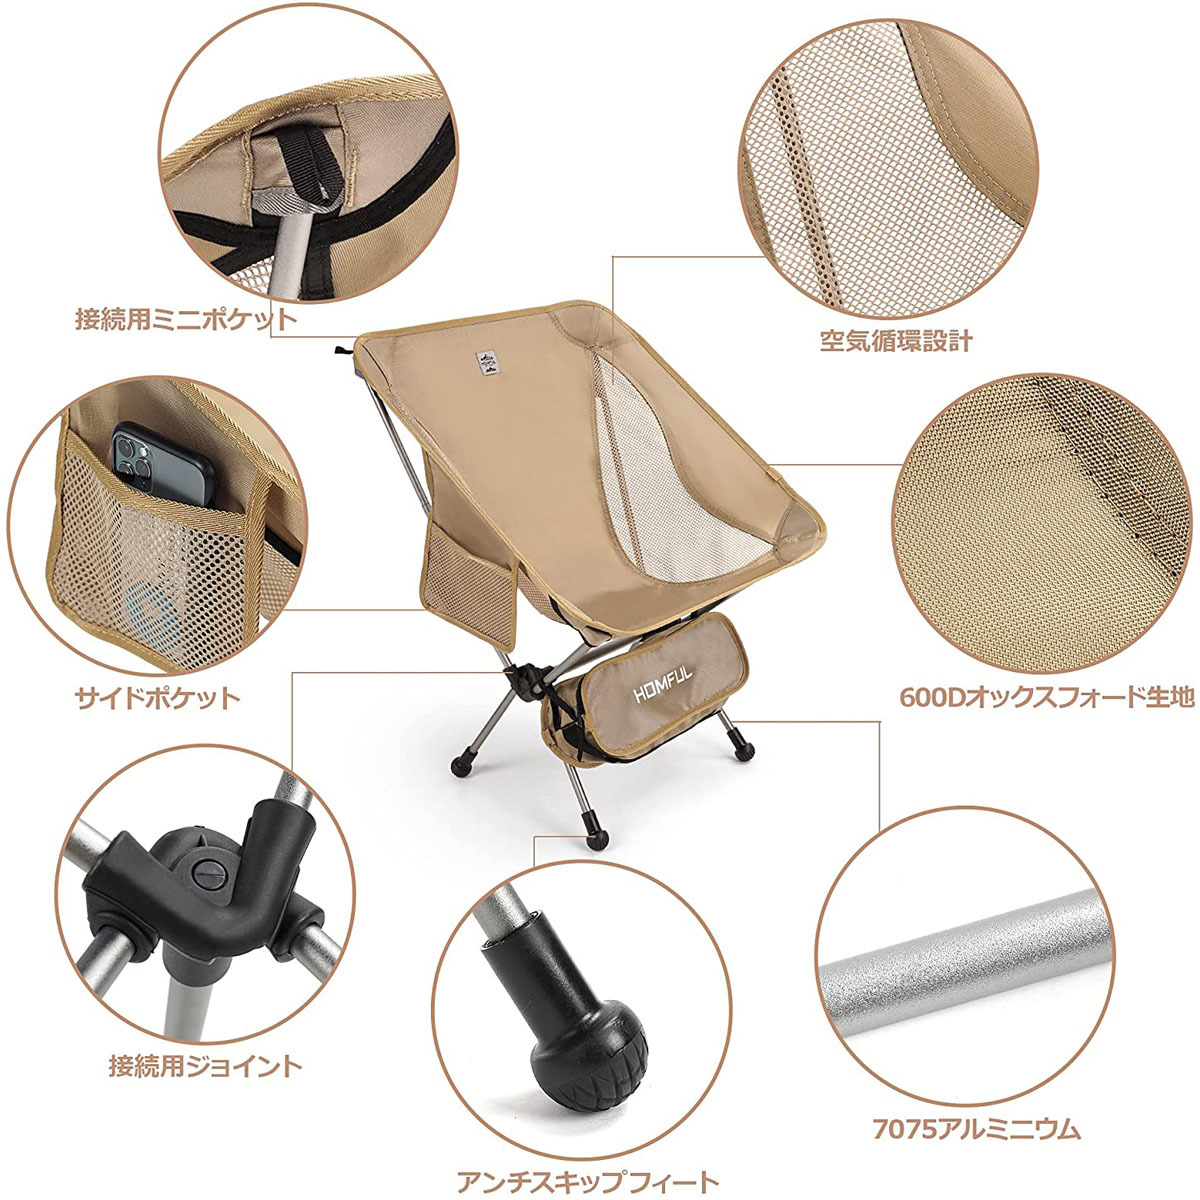 アウトドアチェア 折りたたみ椅子 軽量 コンパクト 組み立て簡単 収納袋付き 耐荷重約100kg サイドポケットあり キャンプ カーキ